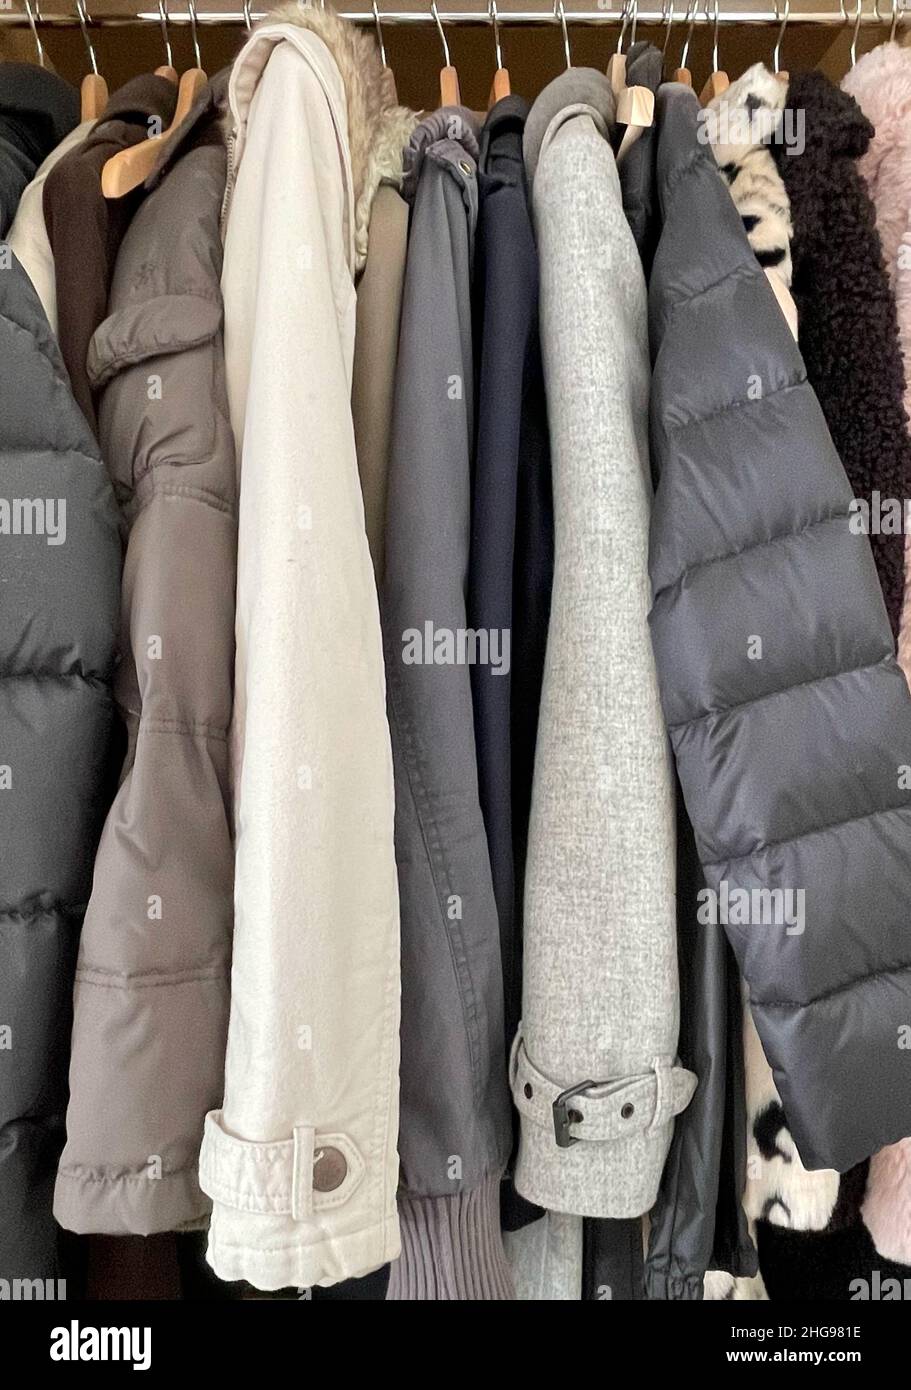 Gros plan de vestes et de manteaux assortis suspendus dans une armoire Banque D'Images